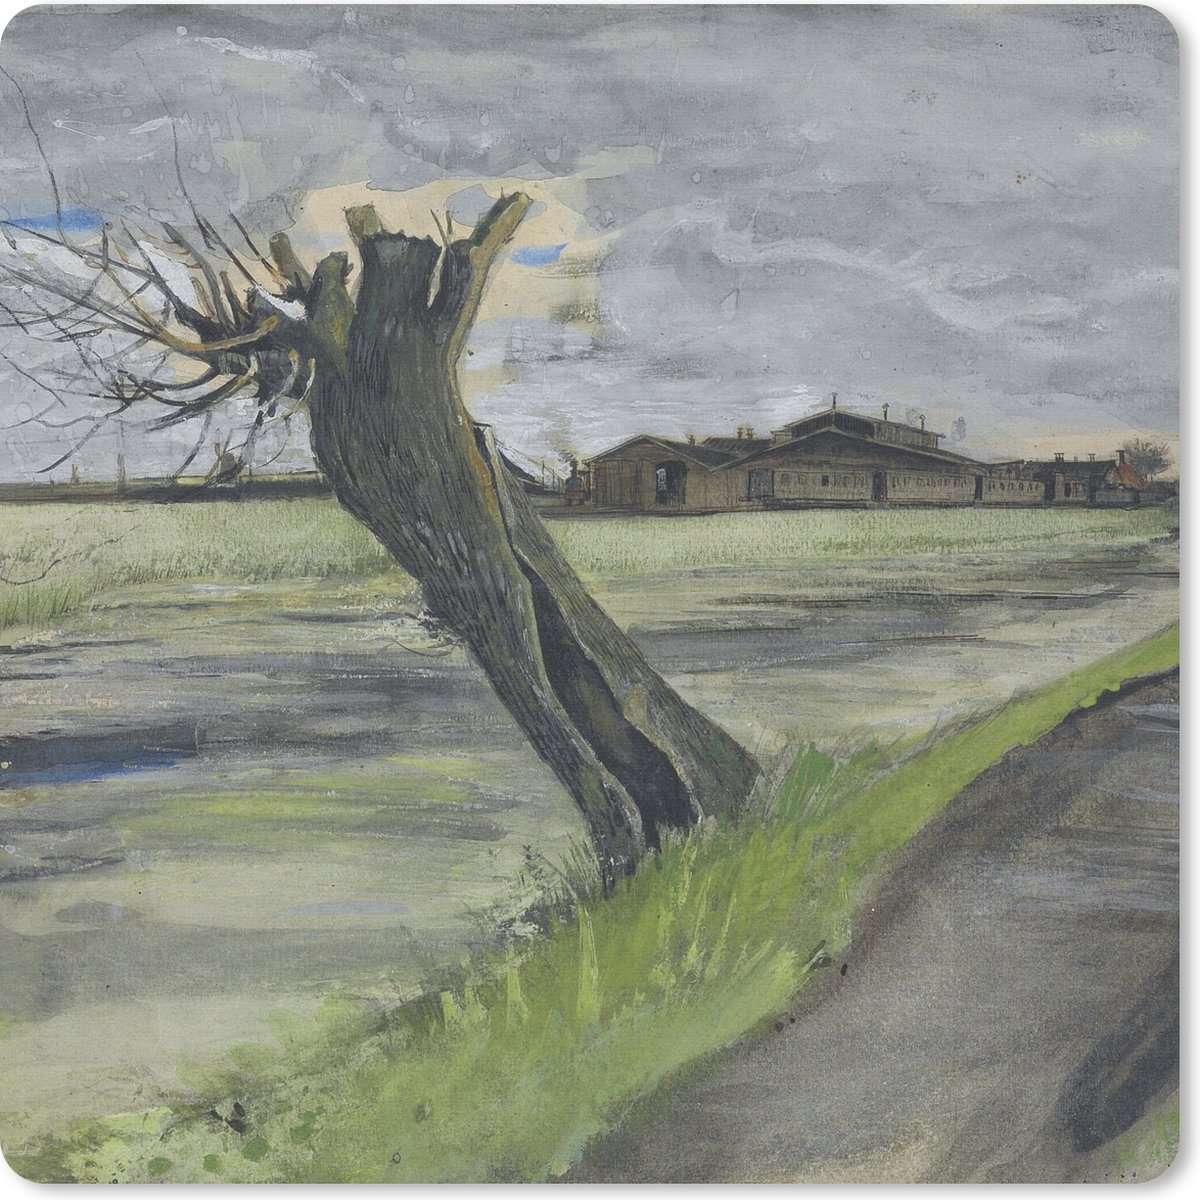 Muismat - Knotwilg - Vincent van Gogh - 20x20